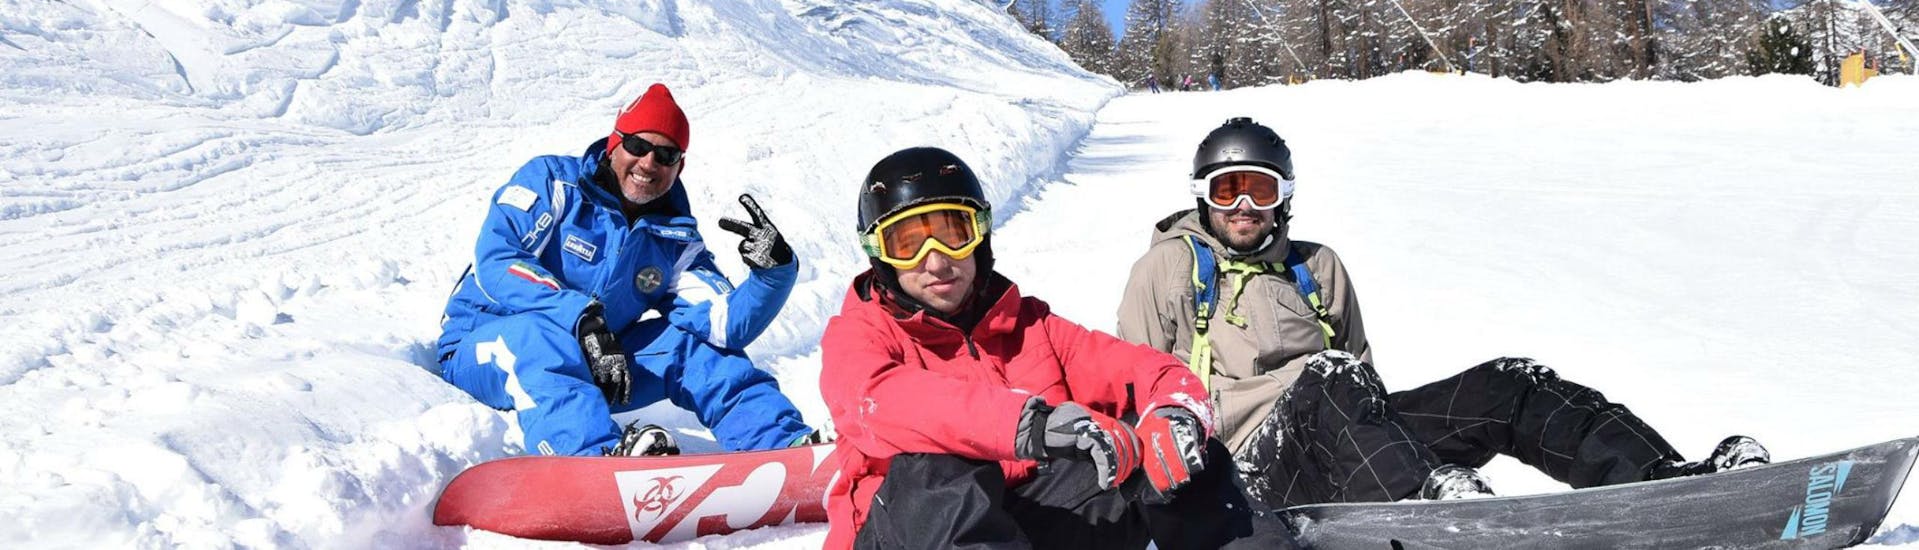 Due snowboarder e il loro istruttore si prendono una breve pausa dalle lezioni di snowboard per bambini e adulti - Tutti i livelli organizzate dalla Scuola di Sci e Snowboard Livigno Italia.